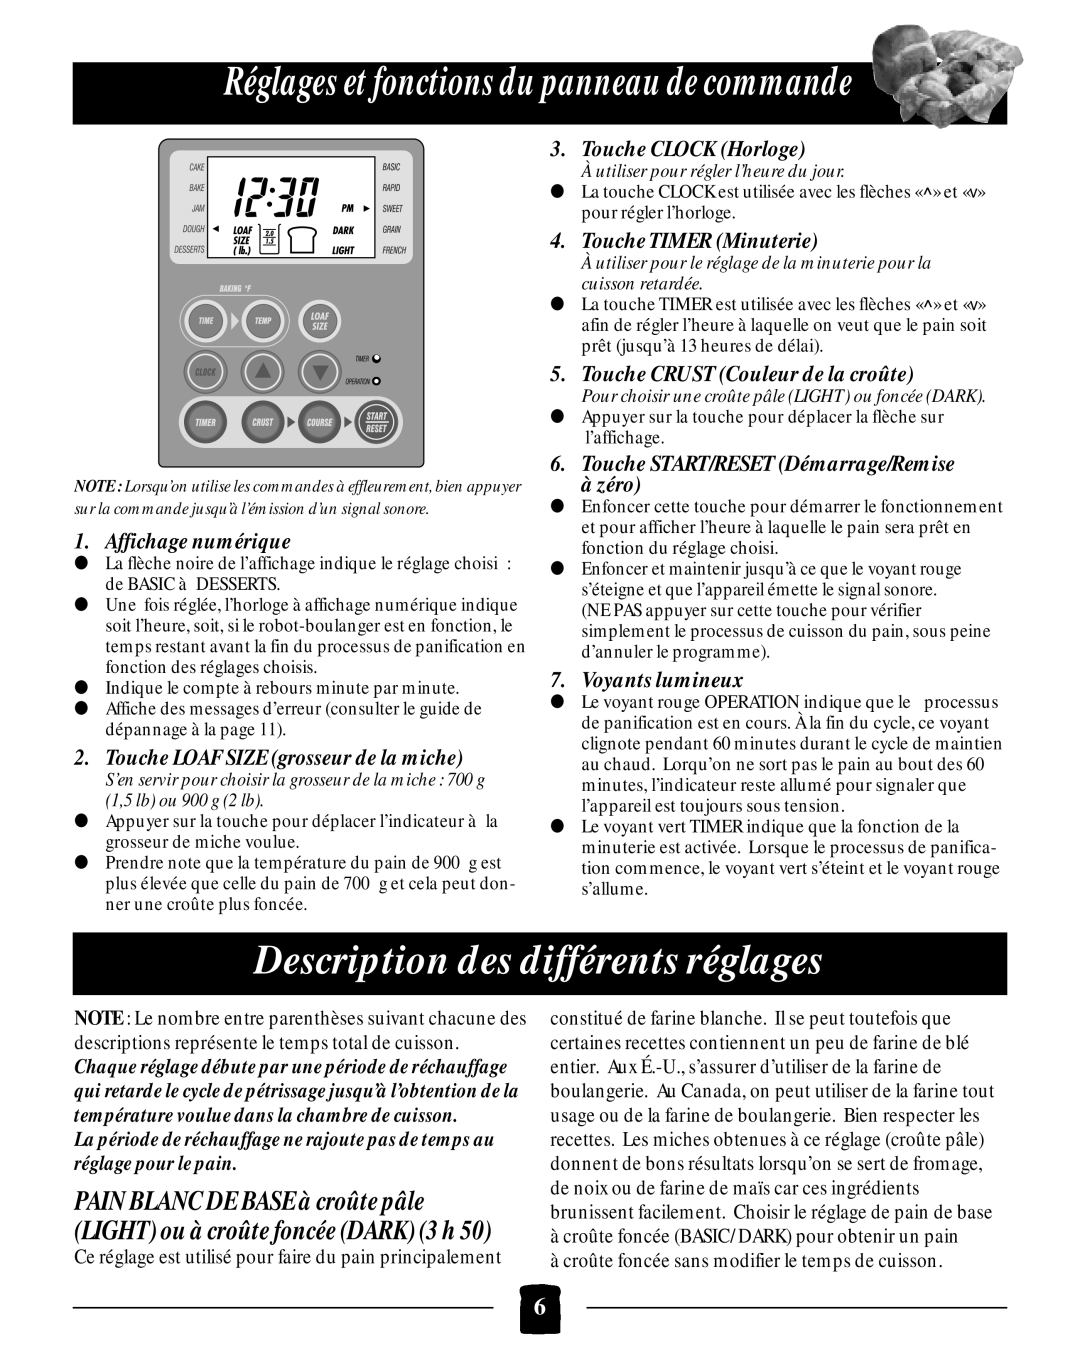 Black & Decker B2005 Réglages et fonctions du panneau de commande, Description des différents réglages, Voyants lumineux 